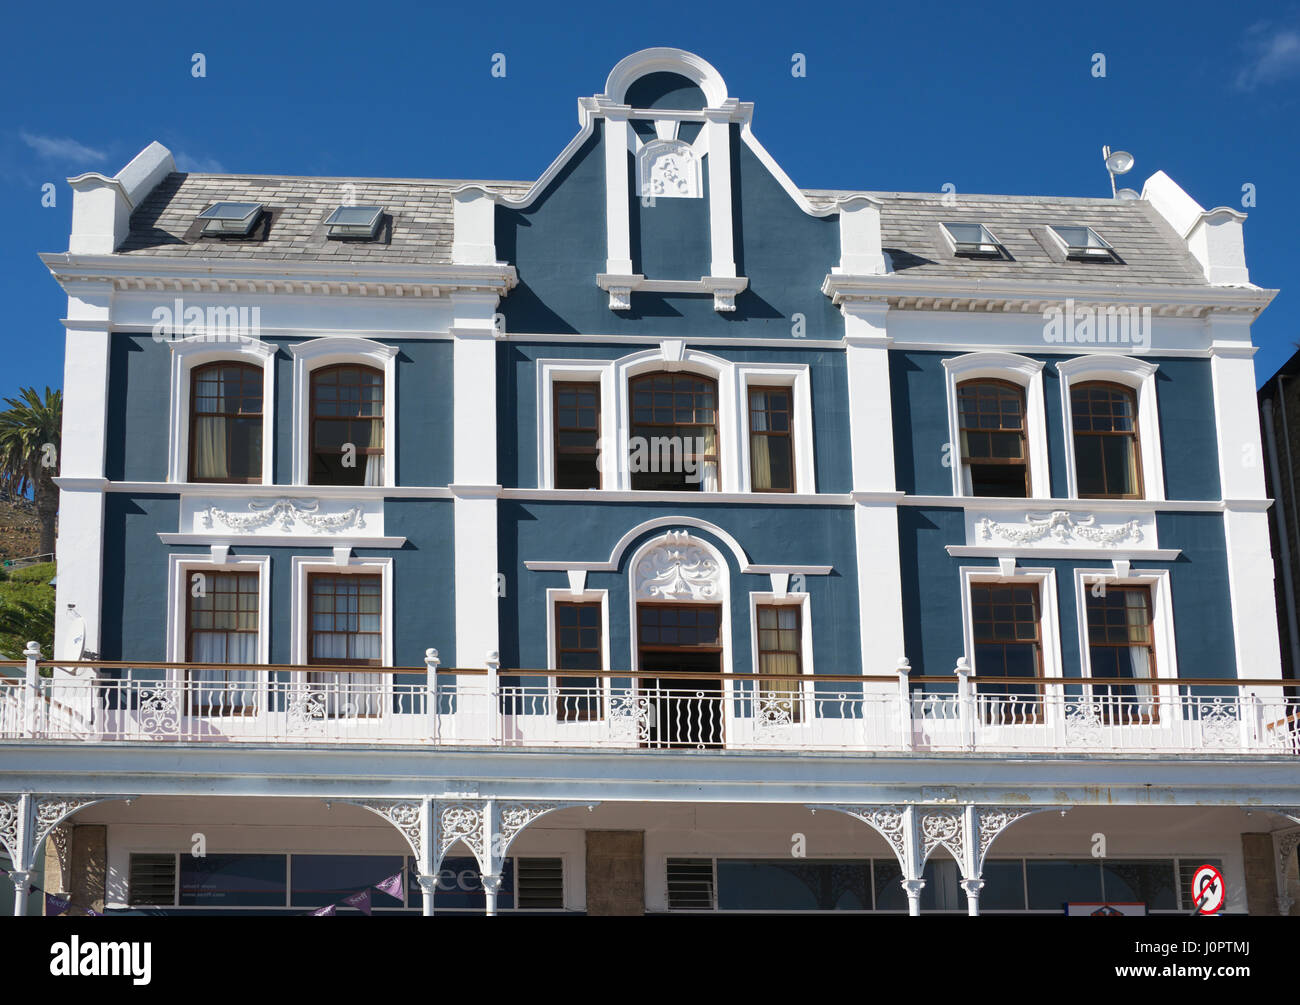 Dettaglio edificio vittoriano Simons Town Cape Town Sudafrica Foto Stock